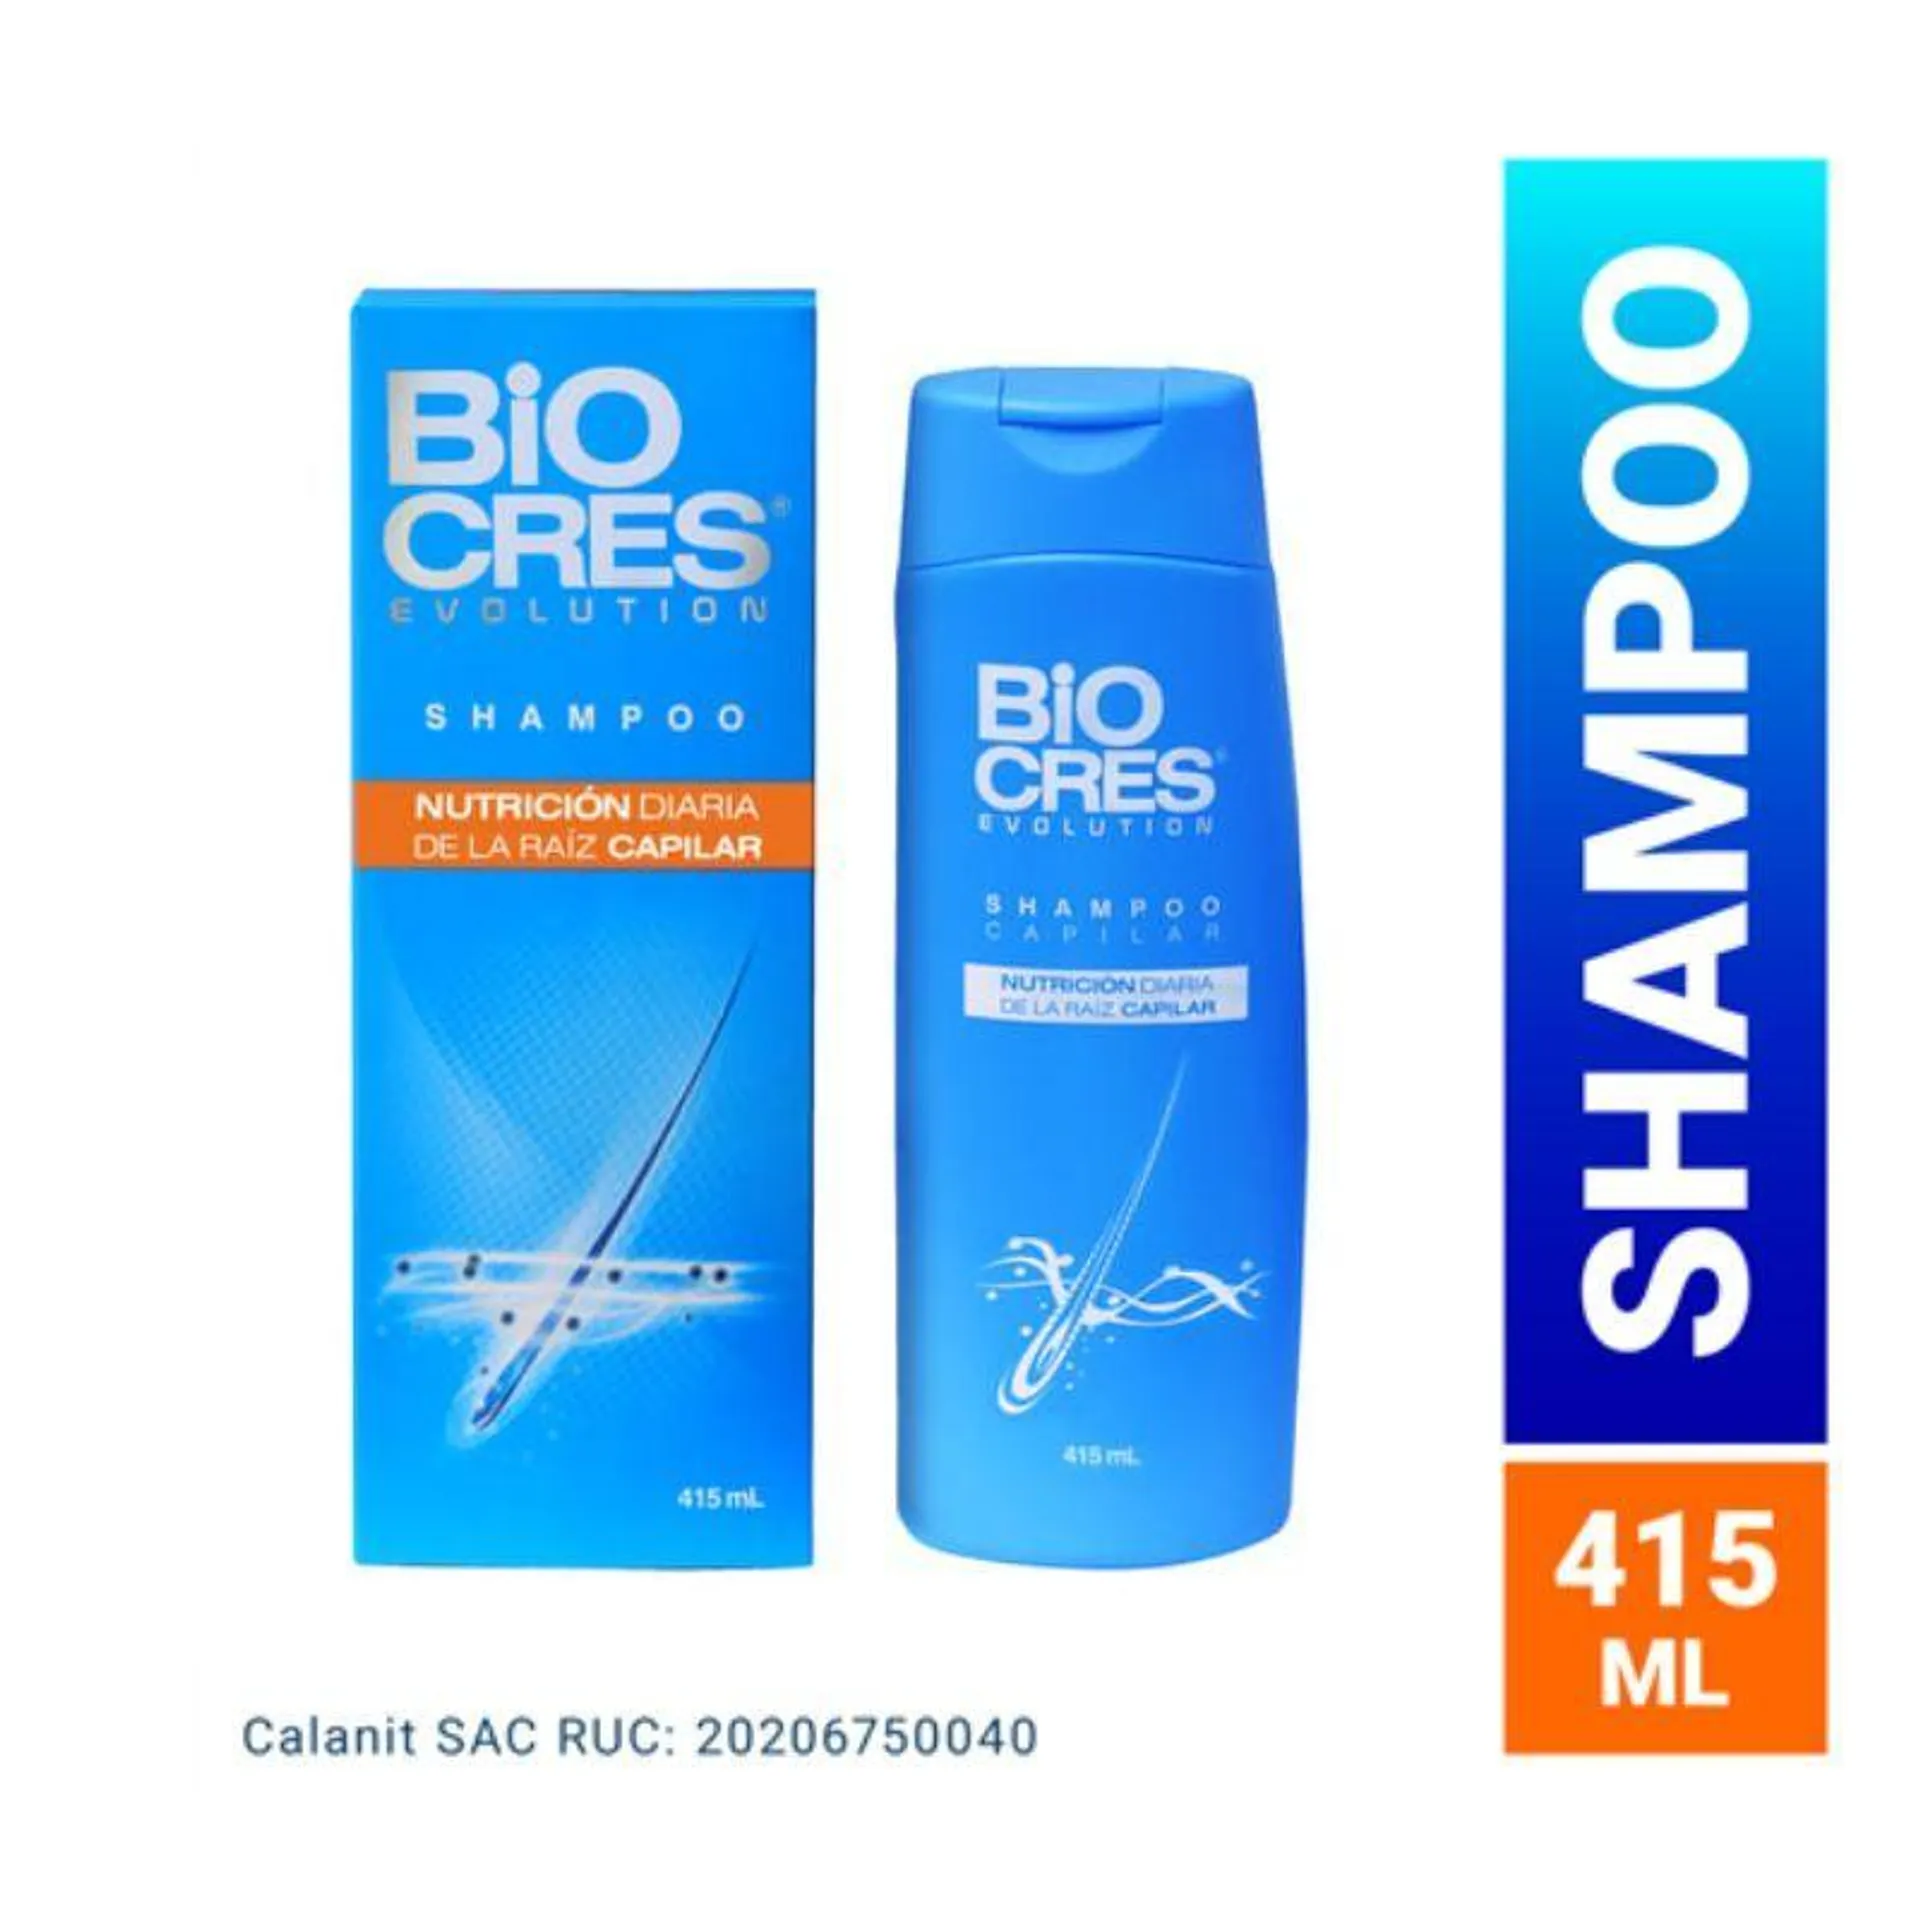 Biocres Evolution Shampoo Capilar - Frasco 415ML